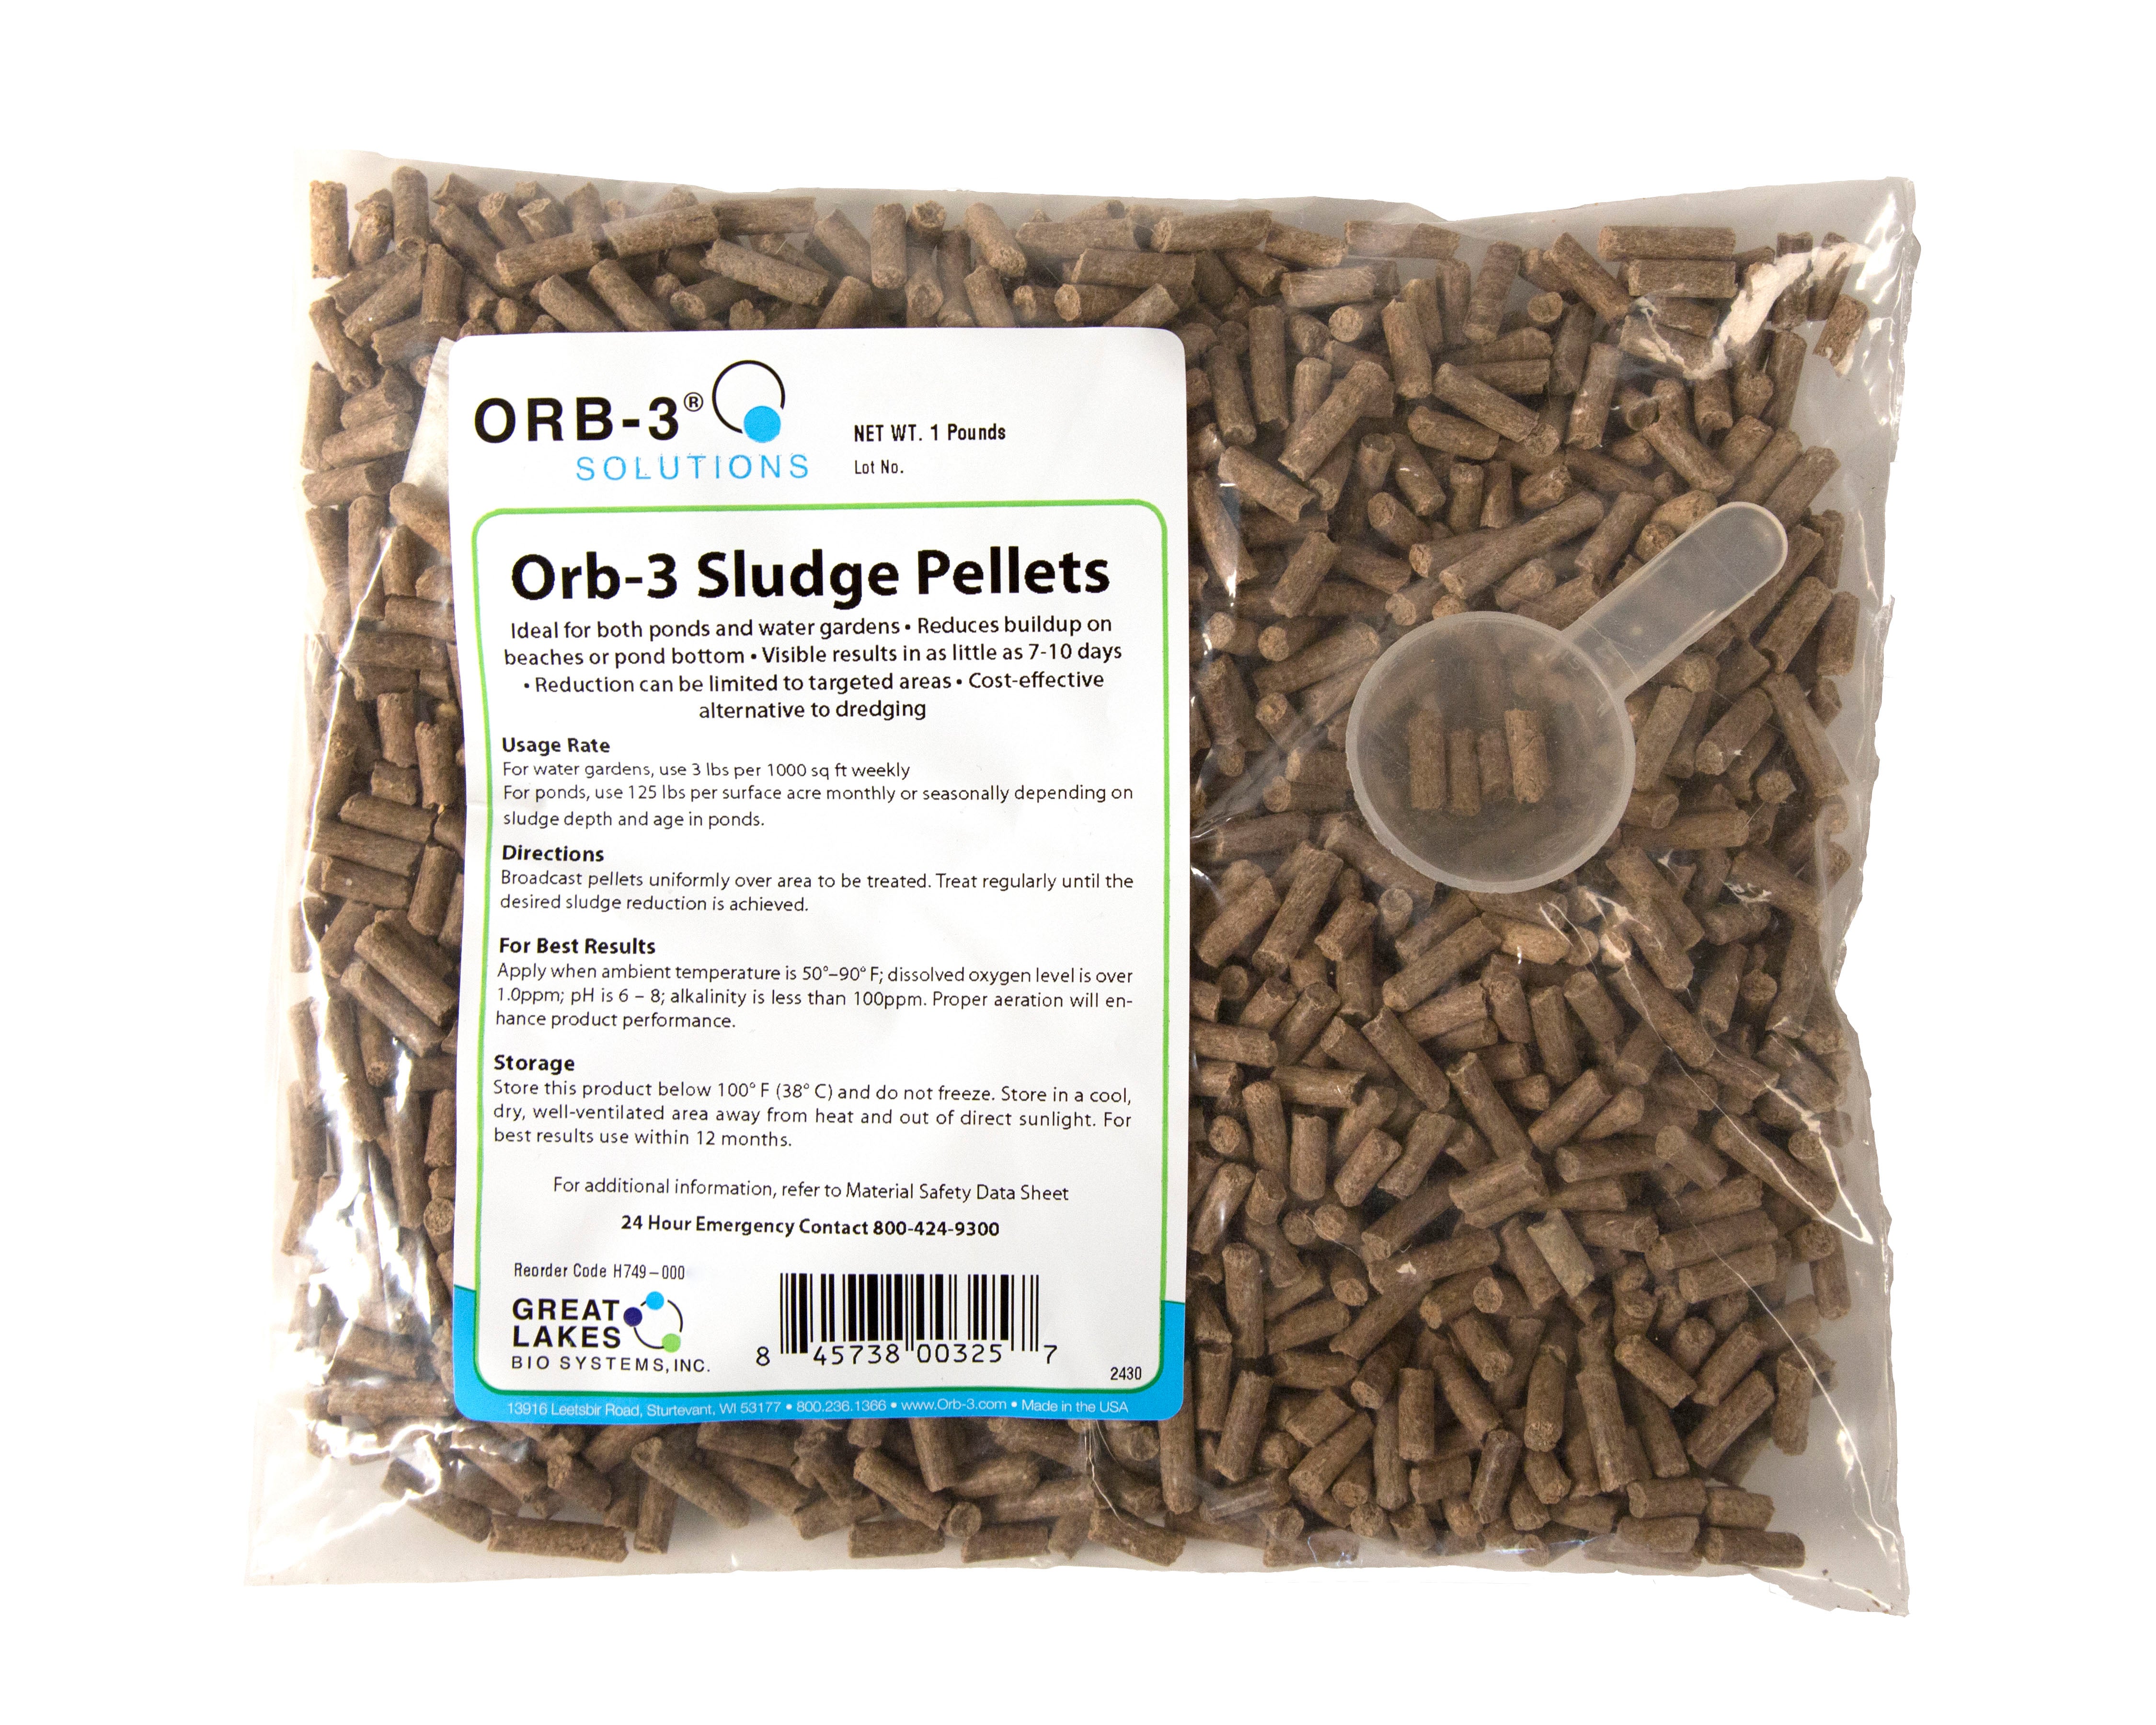 Orb-3 Sludge Pellets